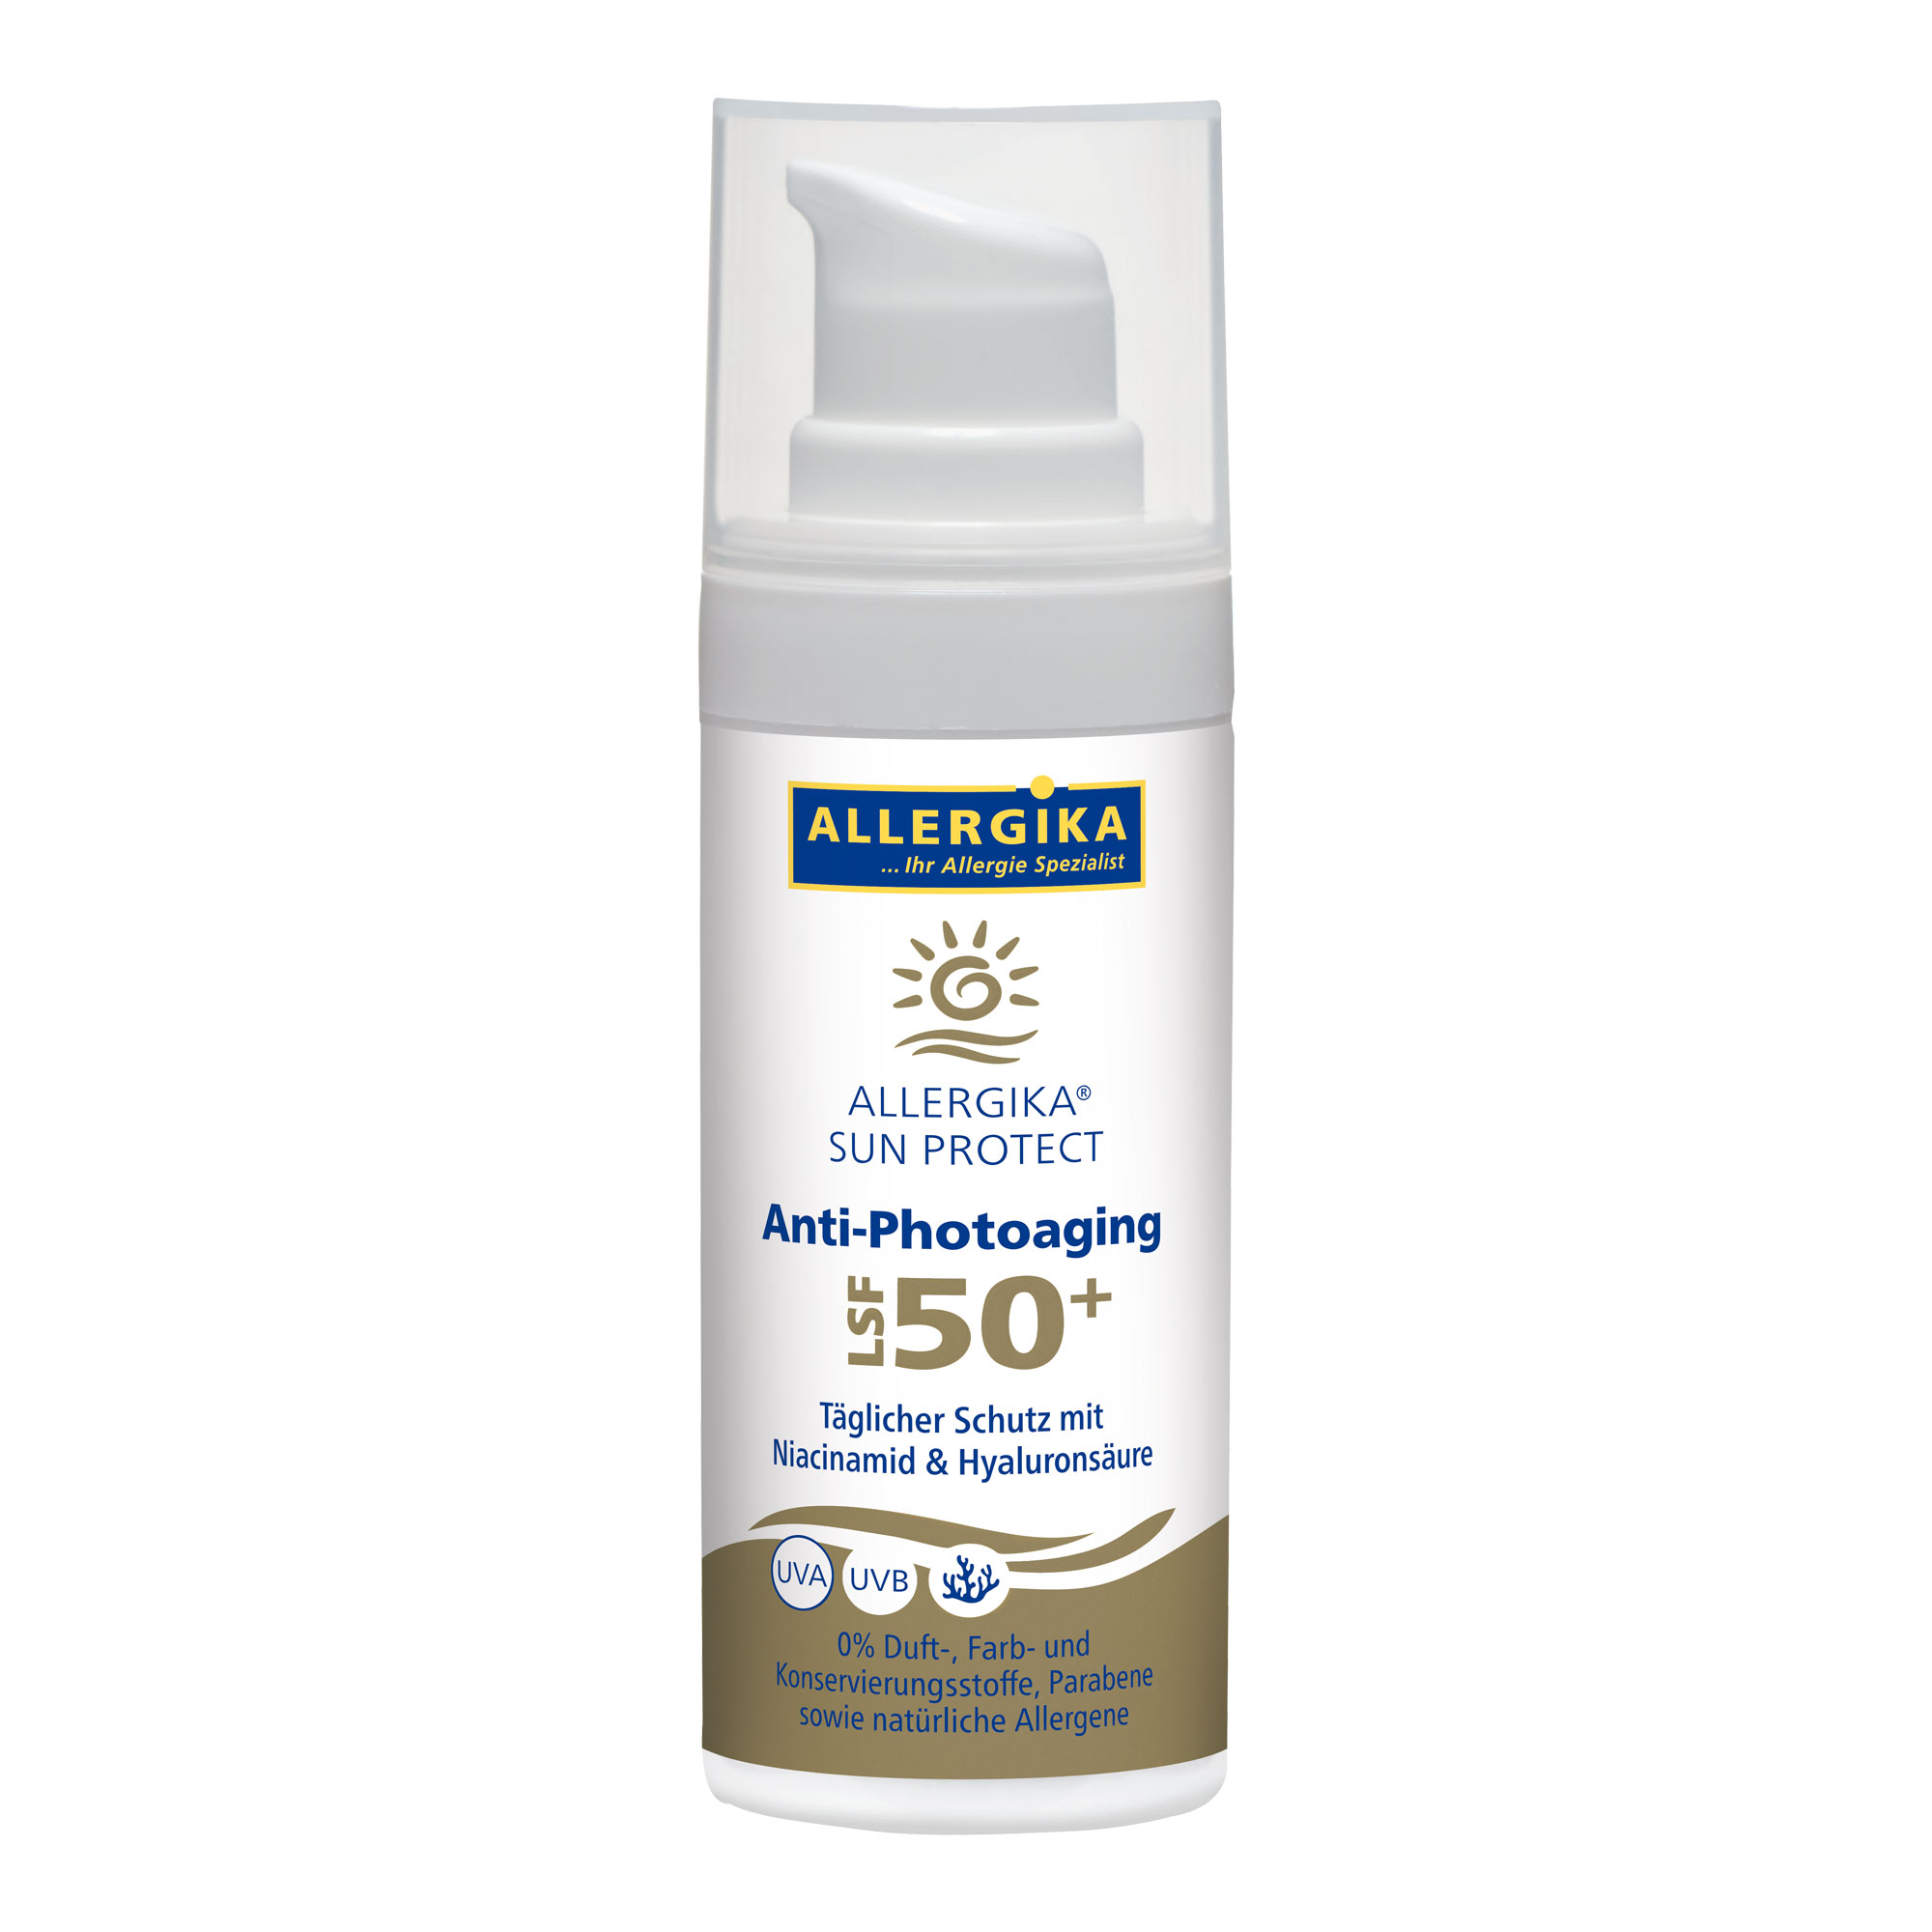 Sonnencreme mit LSF50+ zum Schutz vor vorzeitiger Hautalterung. Mit Niacinamid und Hyaluronsäure.